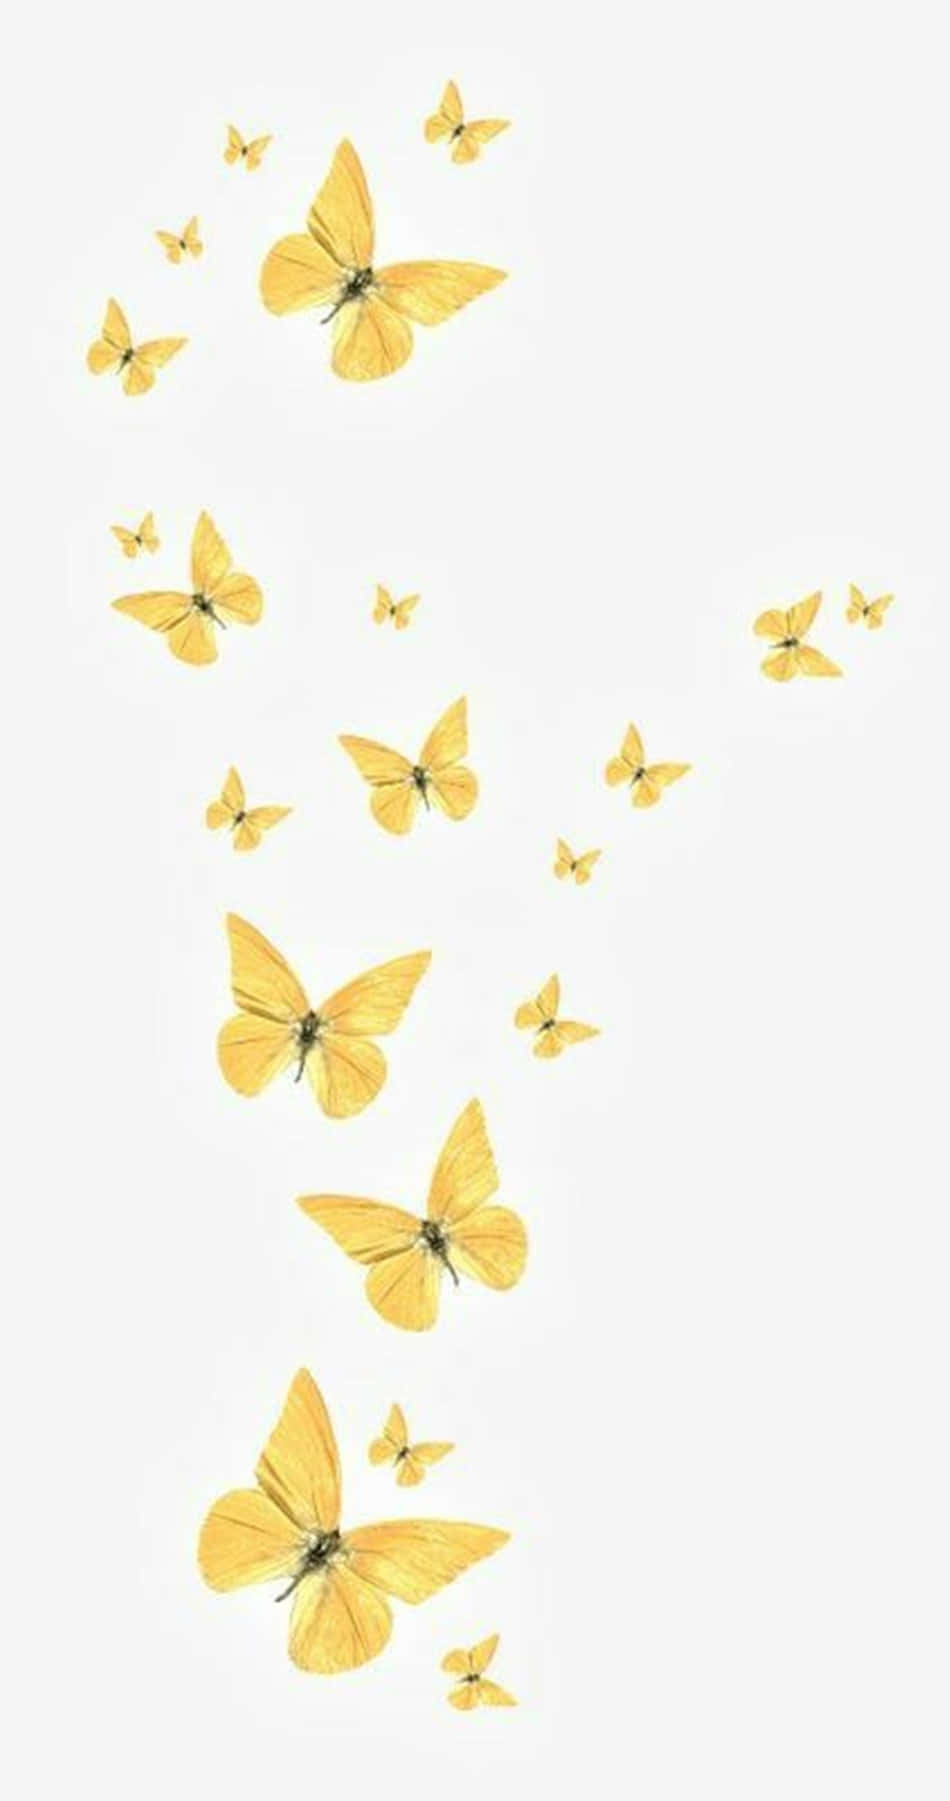 Dosvibrantes Mariposas Amarillas En Busca De Un Nuevo Comienzo. Fondo de pantalla